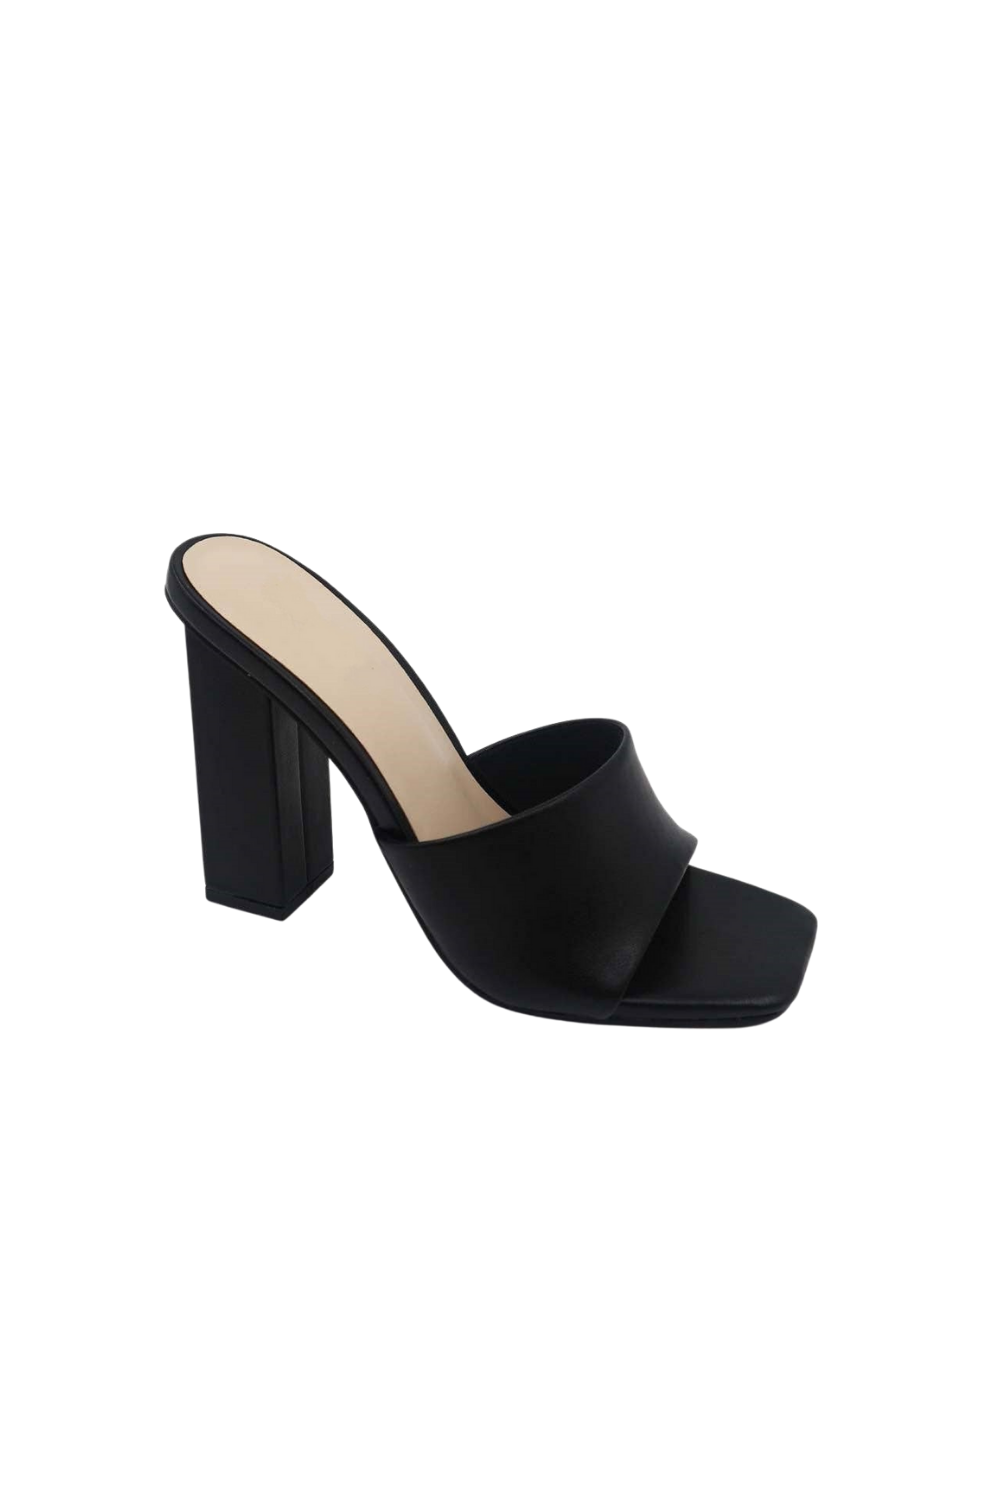 Versona | black peep toe heels